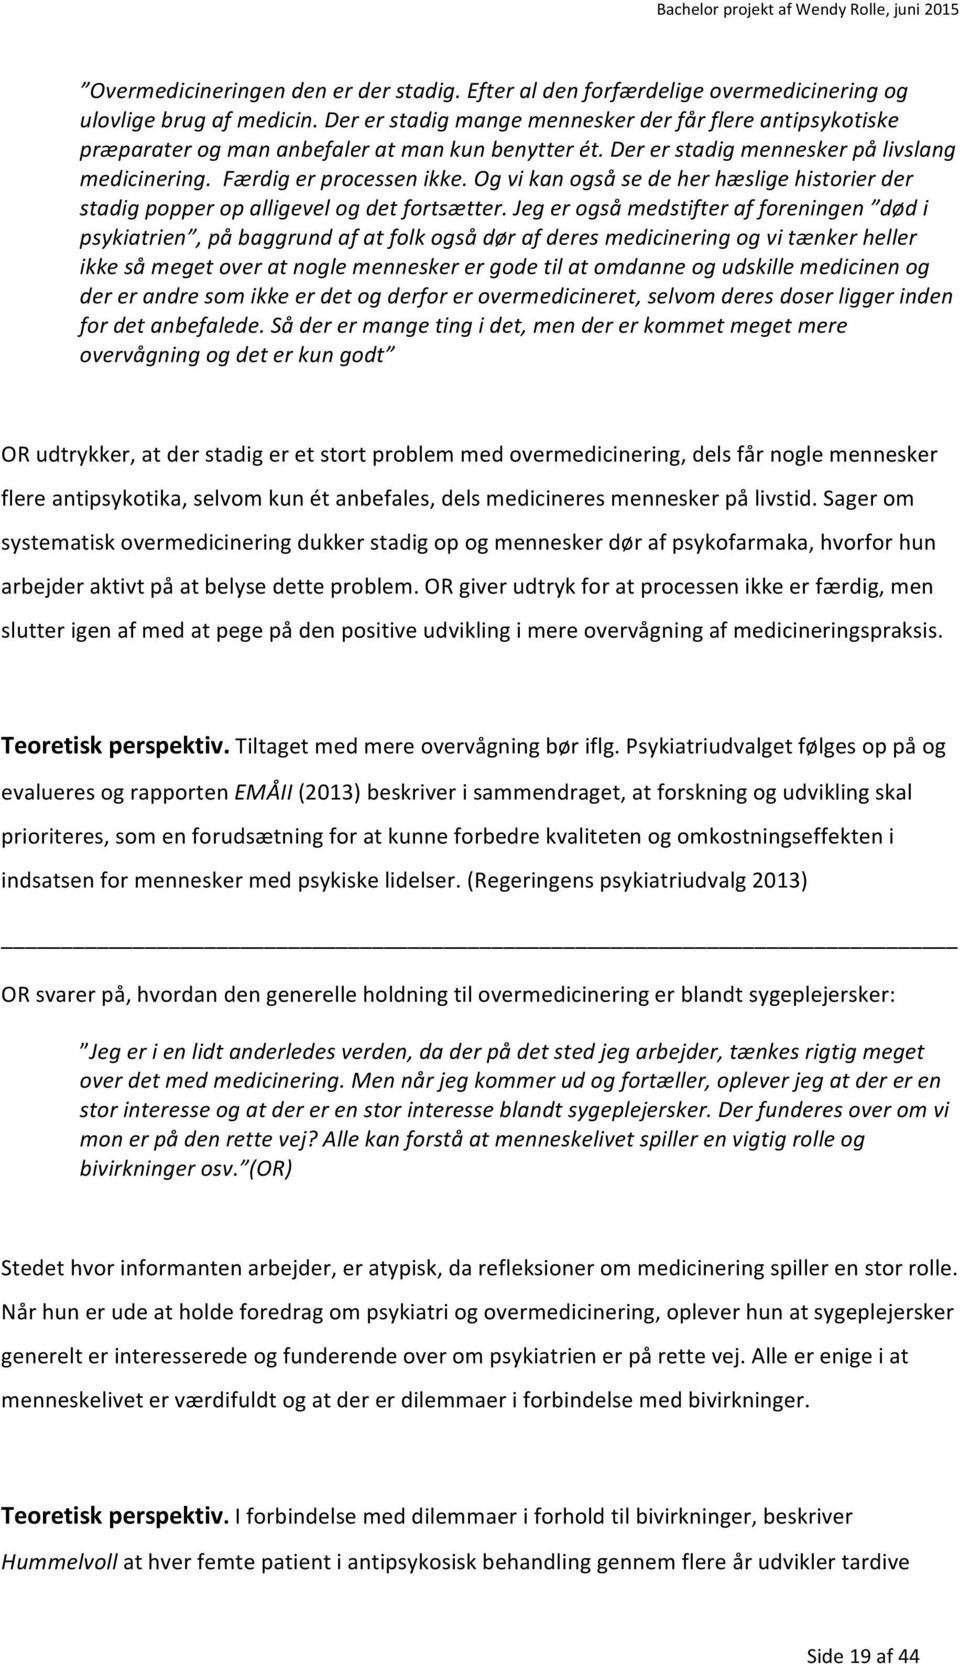 Overmedicinering i psykiatrien? - PDF Gratis download